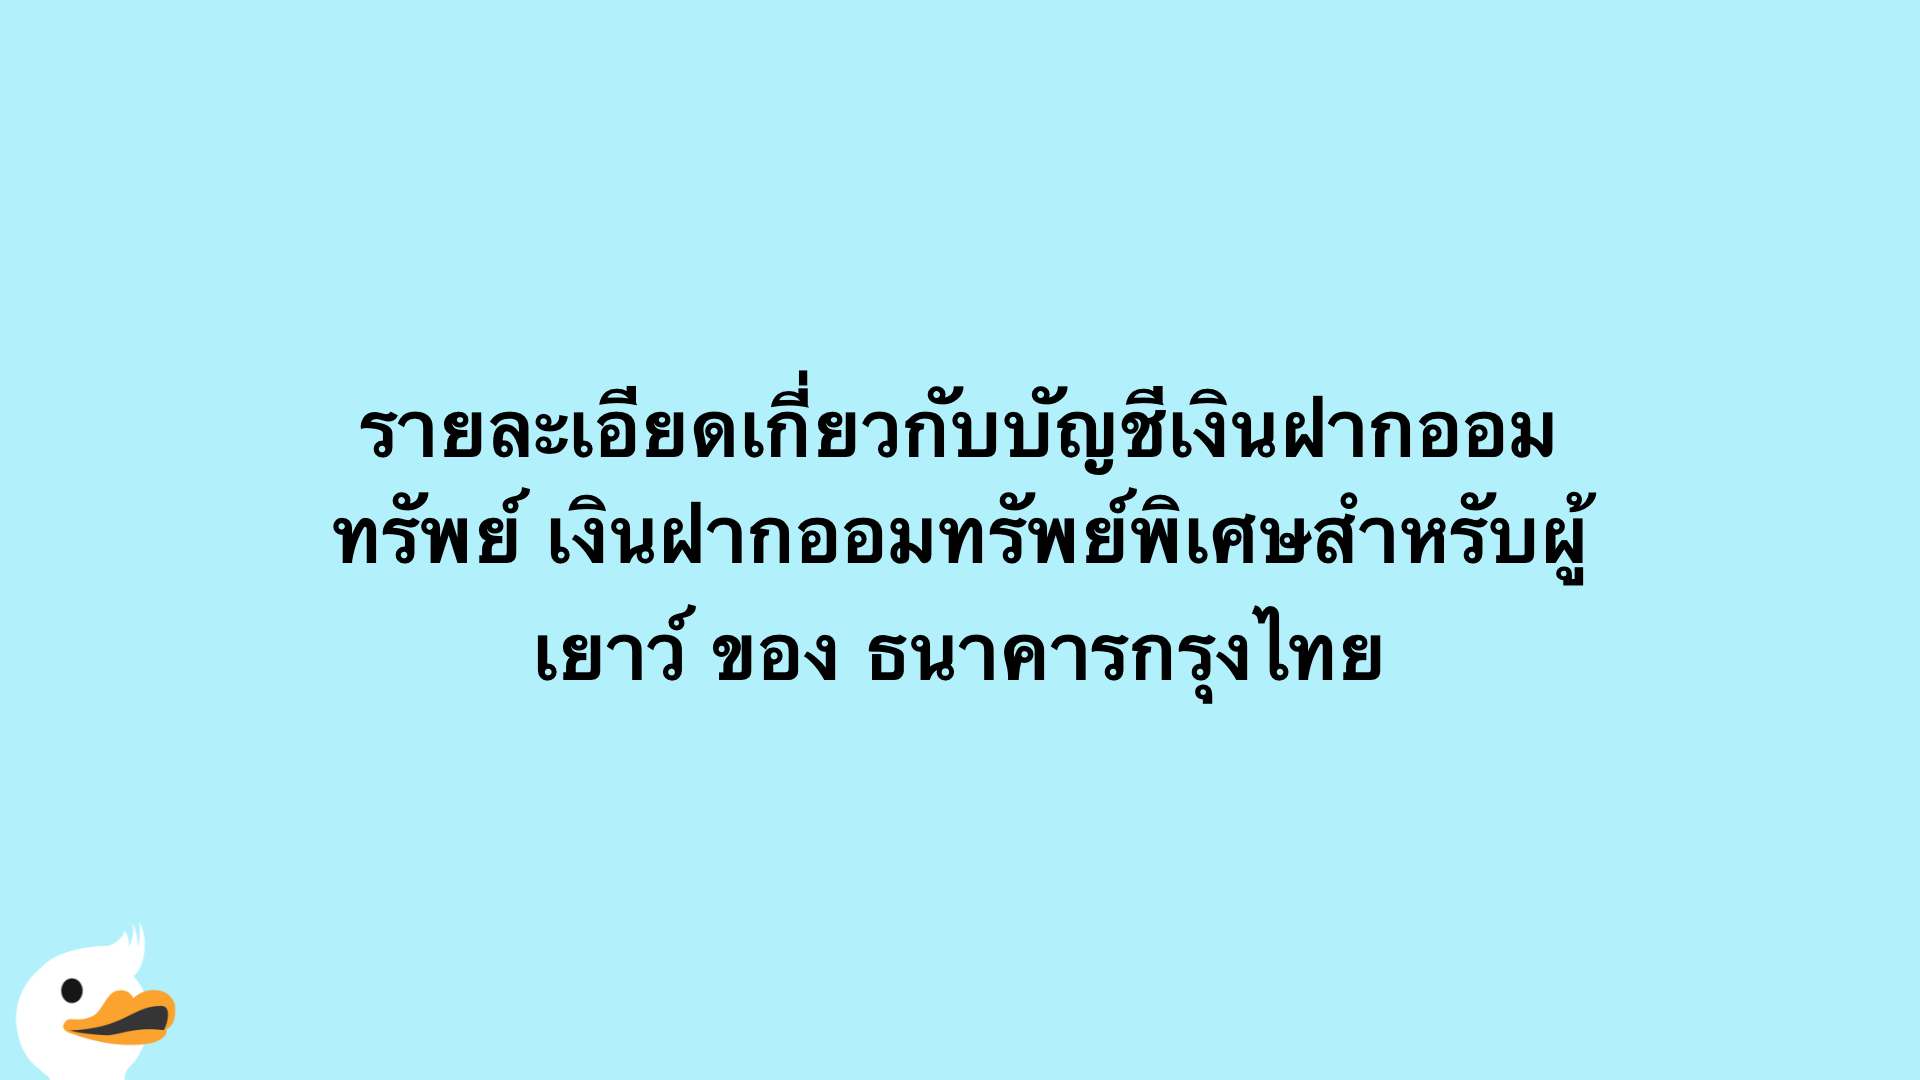 รายละเอียดเกี่ยวกับบัญชีเงินฝากออมทรัพย์ เงินฝากออมทรัพย์พิเศษสำหรับผู้เยาว์ ของ ธนาคารกรุงไทย